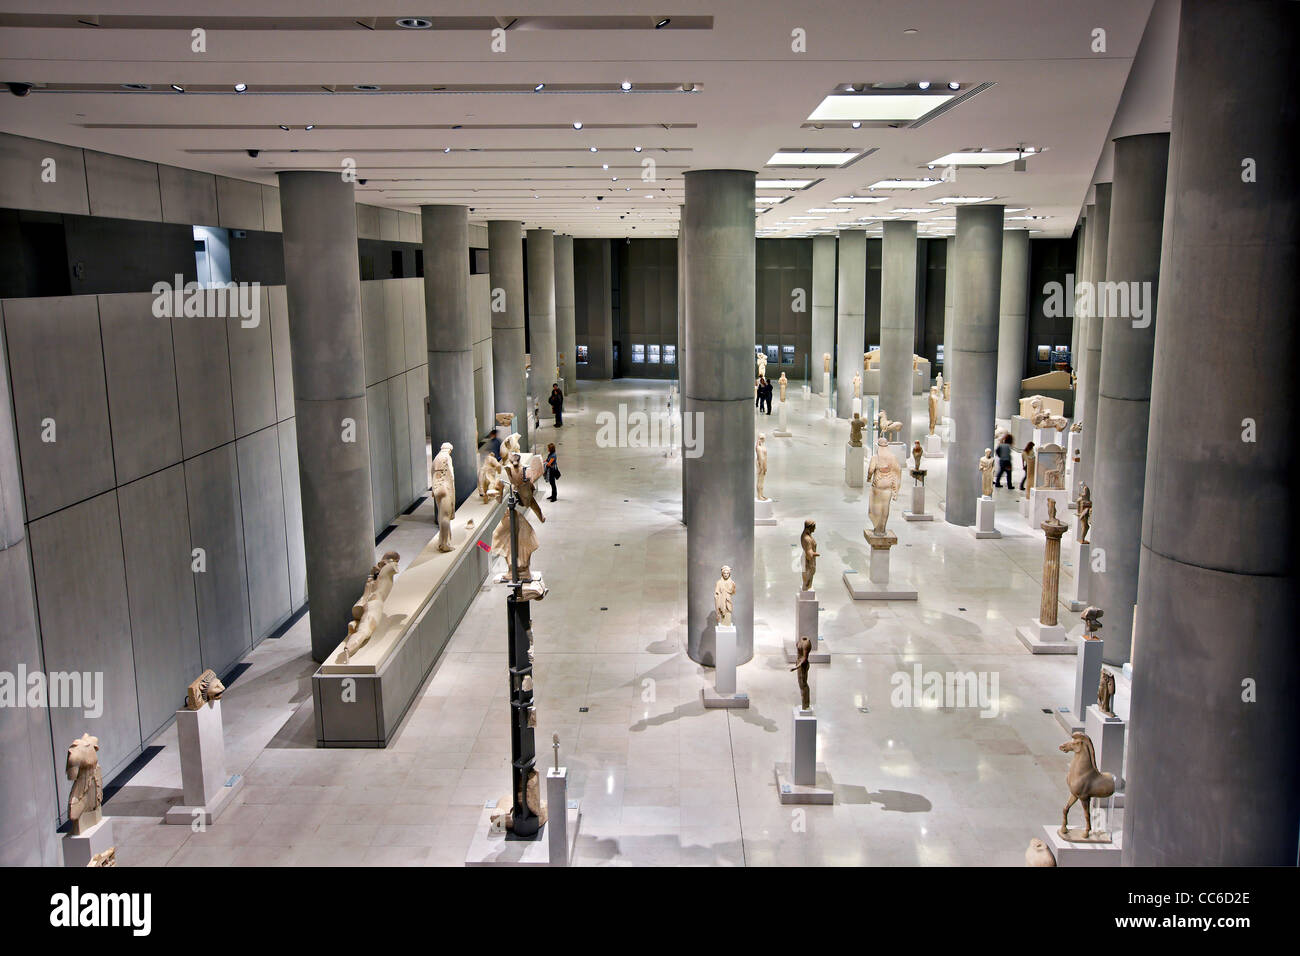 Innenansicht des Akropolis-Museums (neu). Hier sehen Sie die archaische Galerie im 1. Stock (Ebene 1). Athen, Griechenland Stockfoto